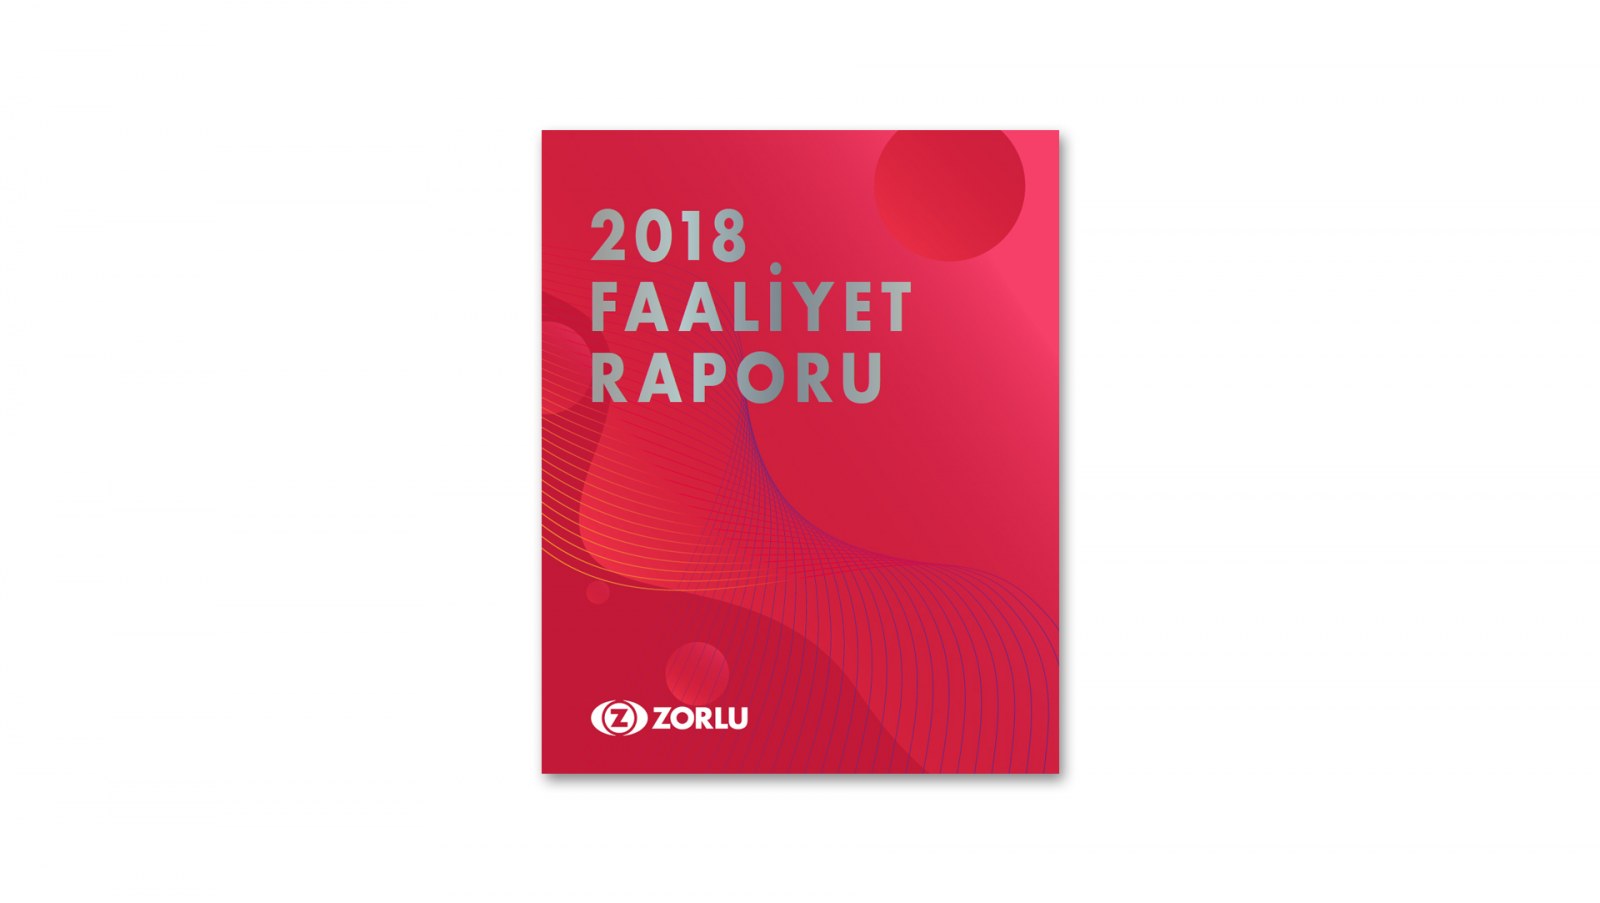 ZORLU GRUBU / 2018 Faaliyet Raporu / 2018 Annual Report